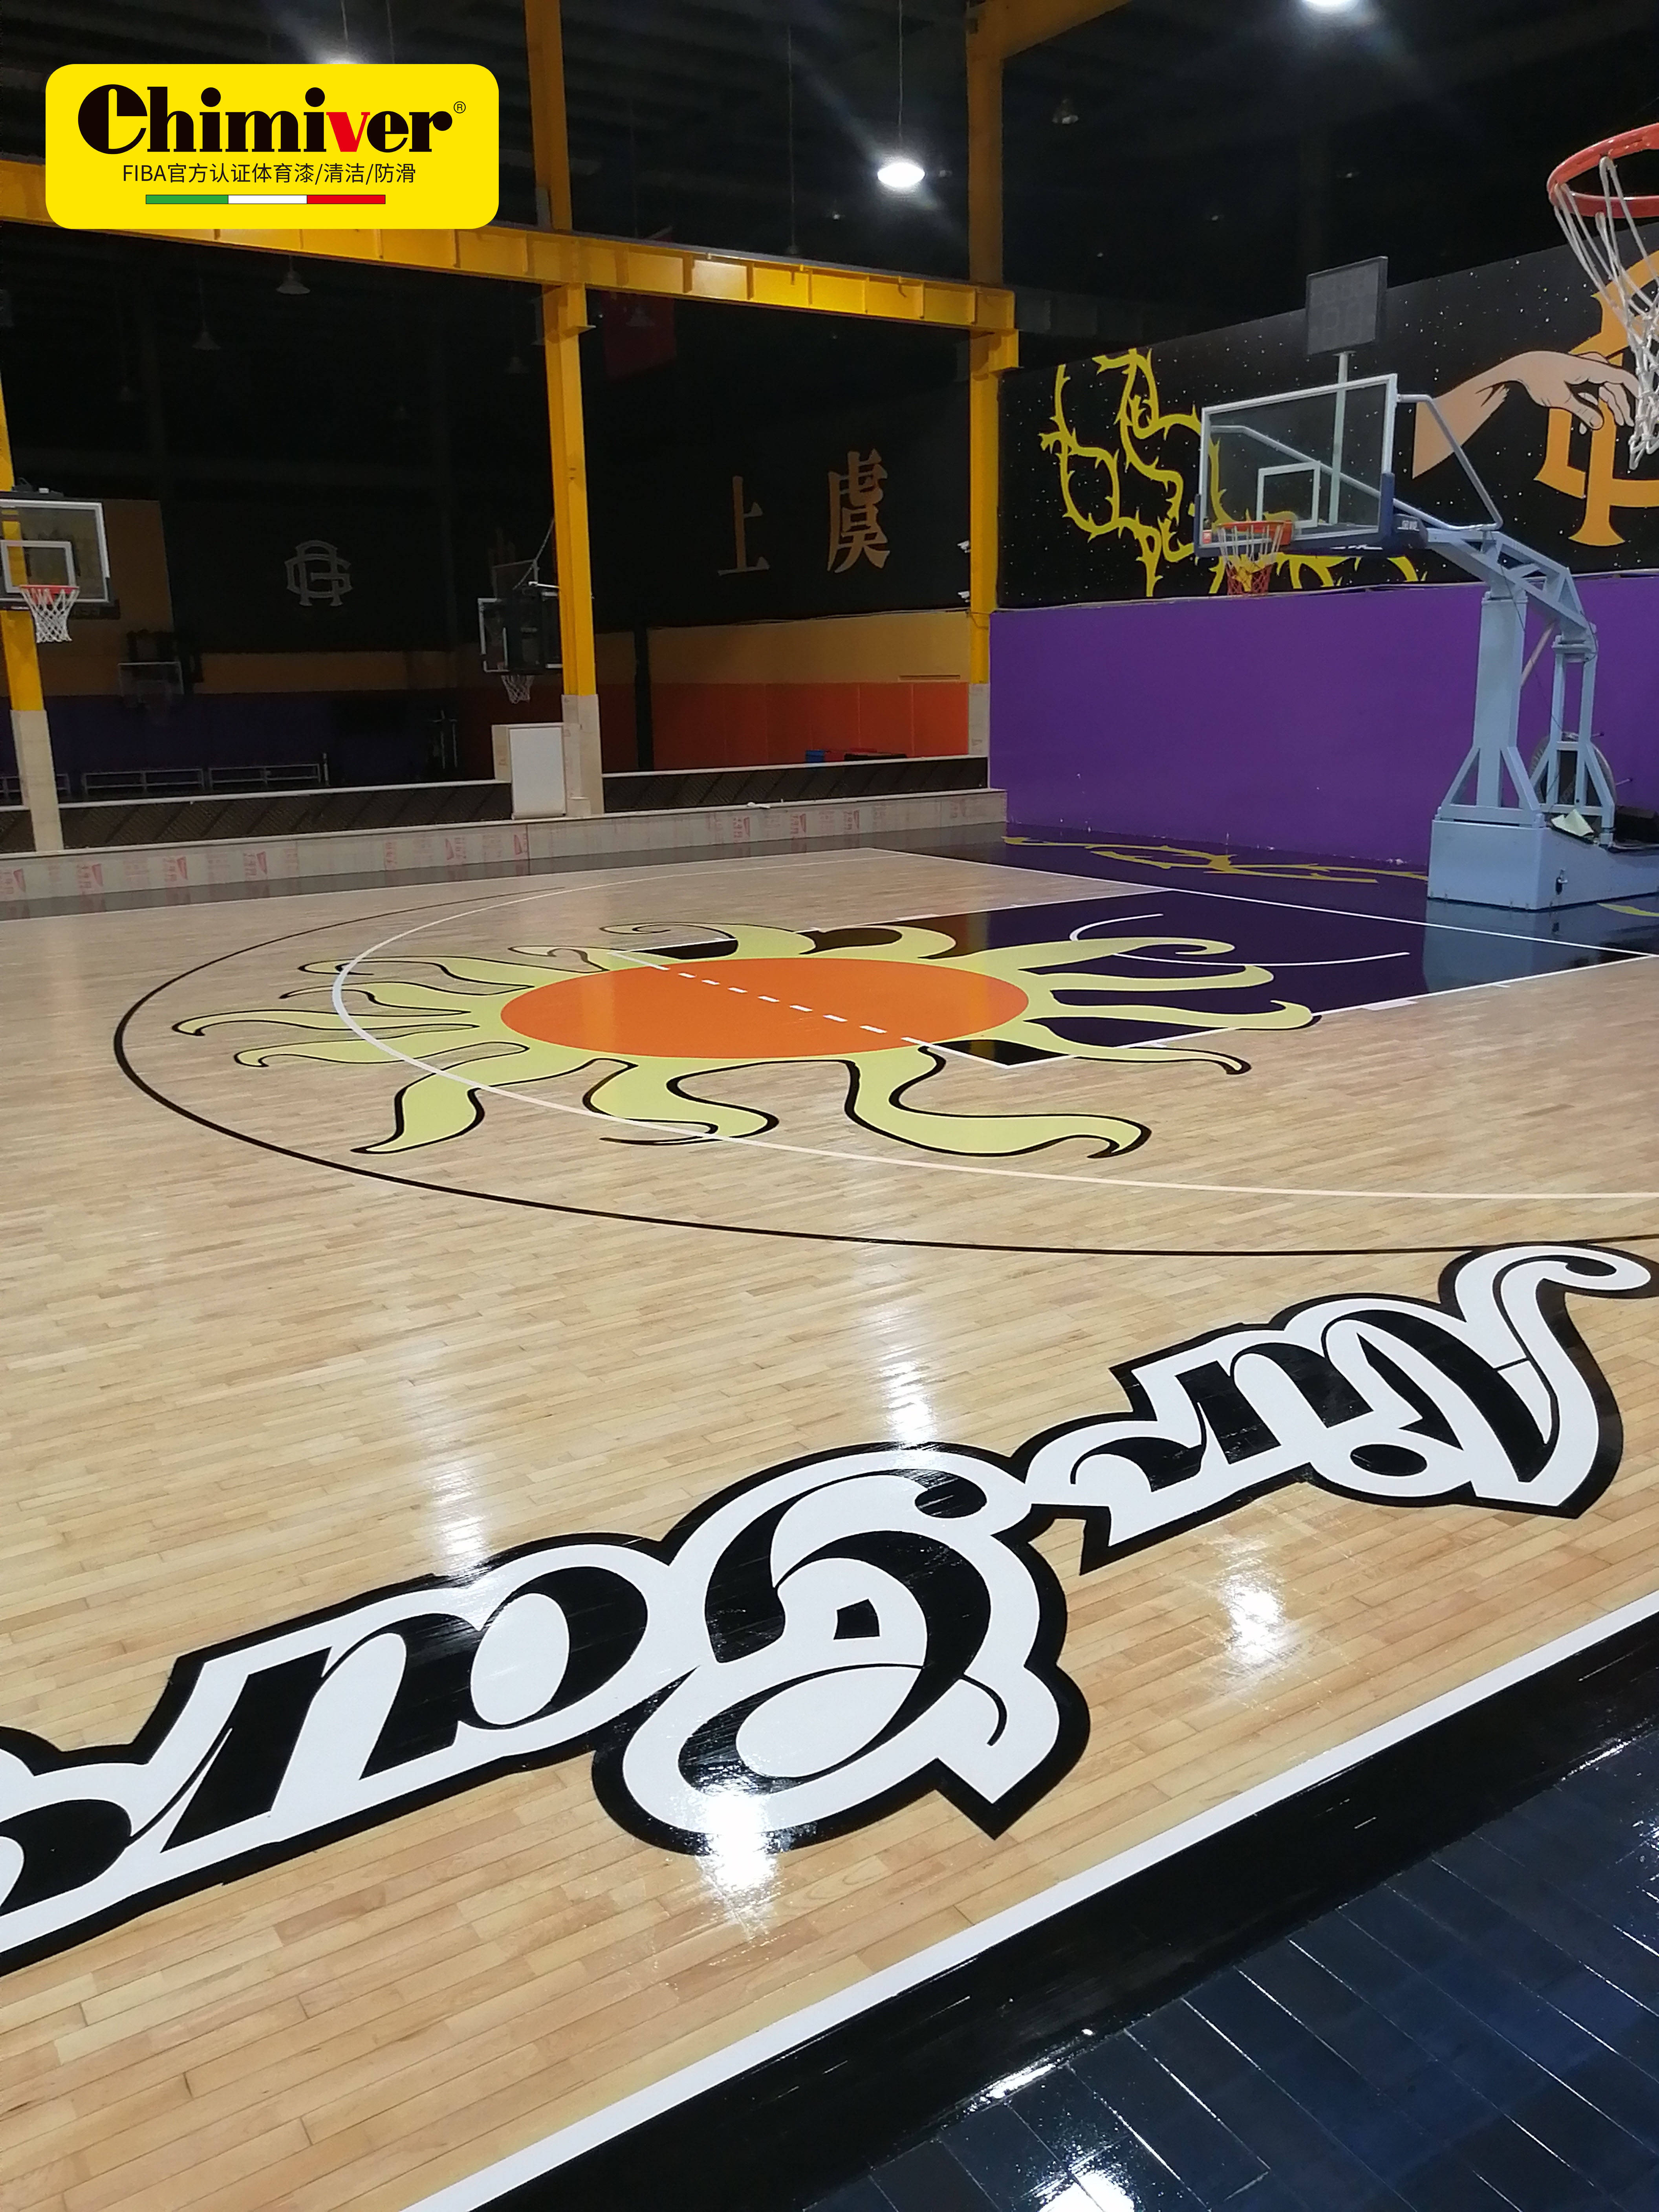 nba湖人队主场篮球馆木地板彩漆实际运用,凯美沃运动木地板漆应用